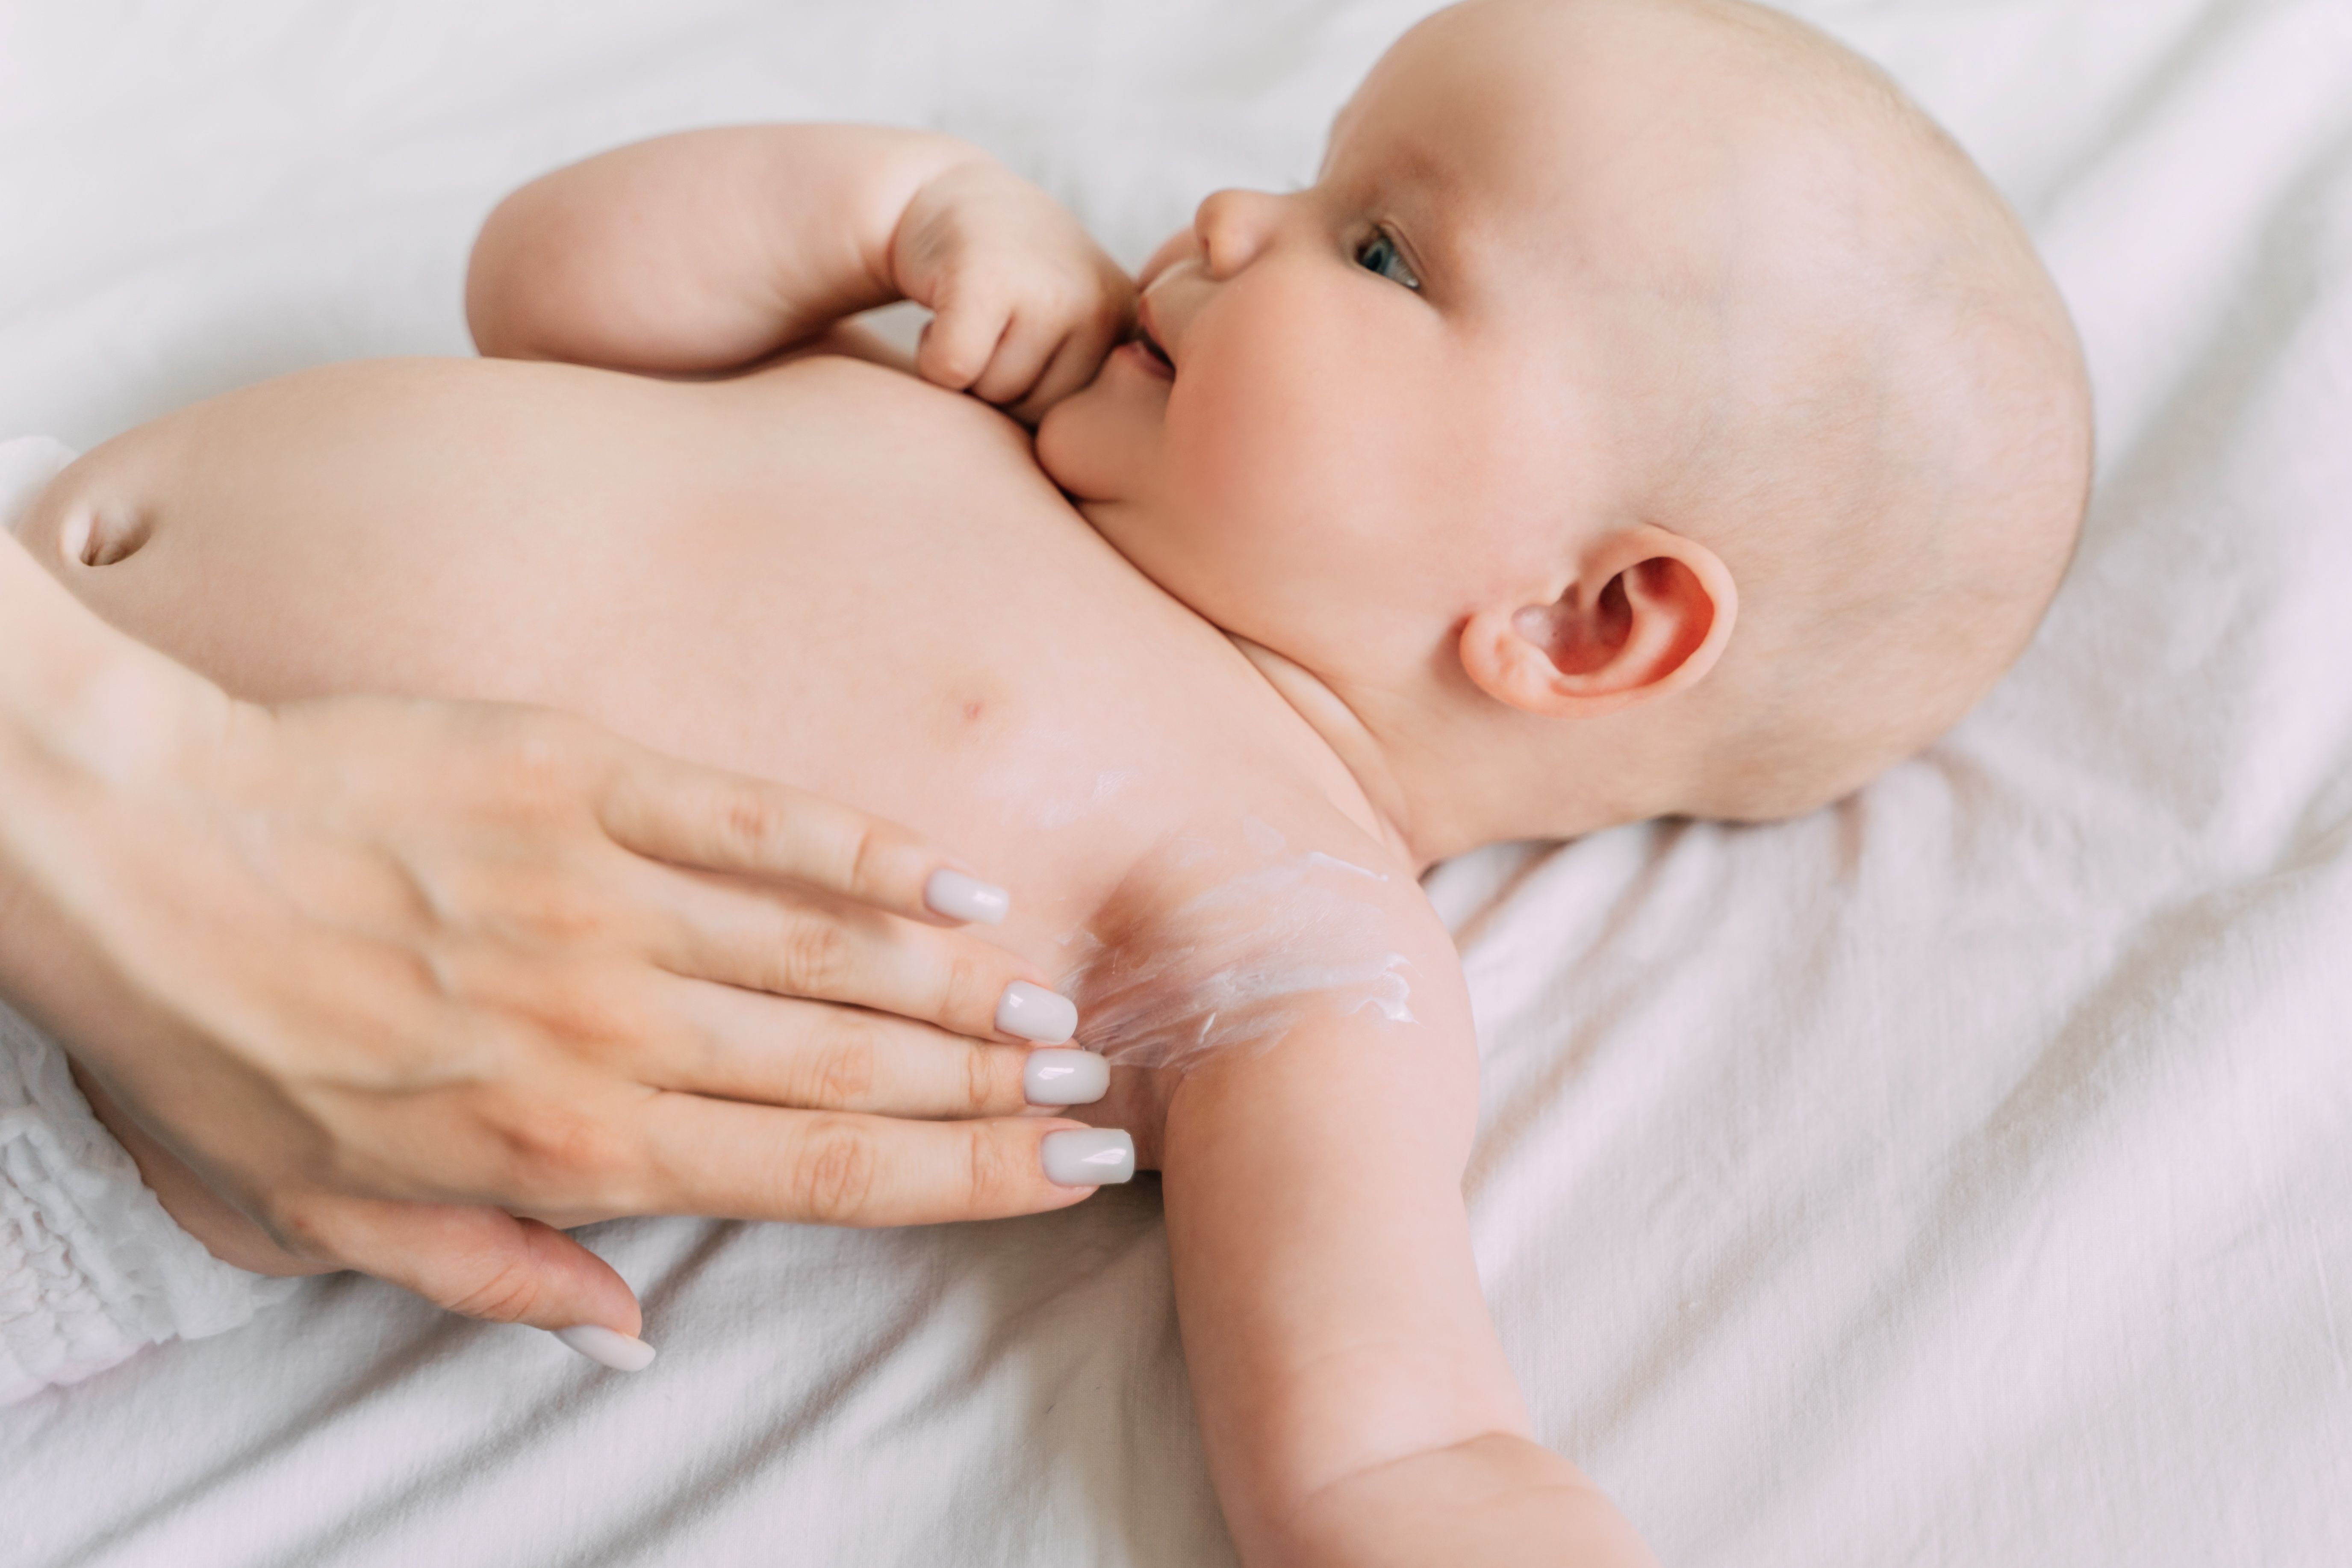 Bebés, productos para el cuidado de piel de tu bebé - Nuvel